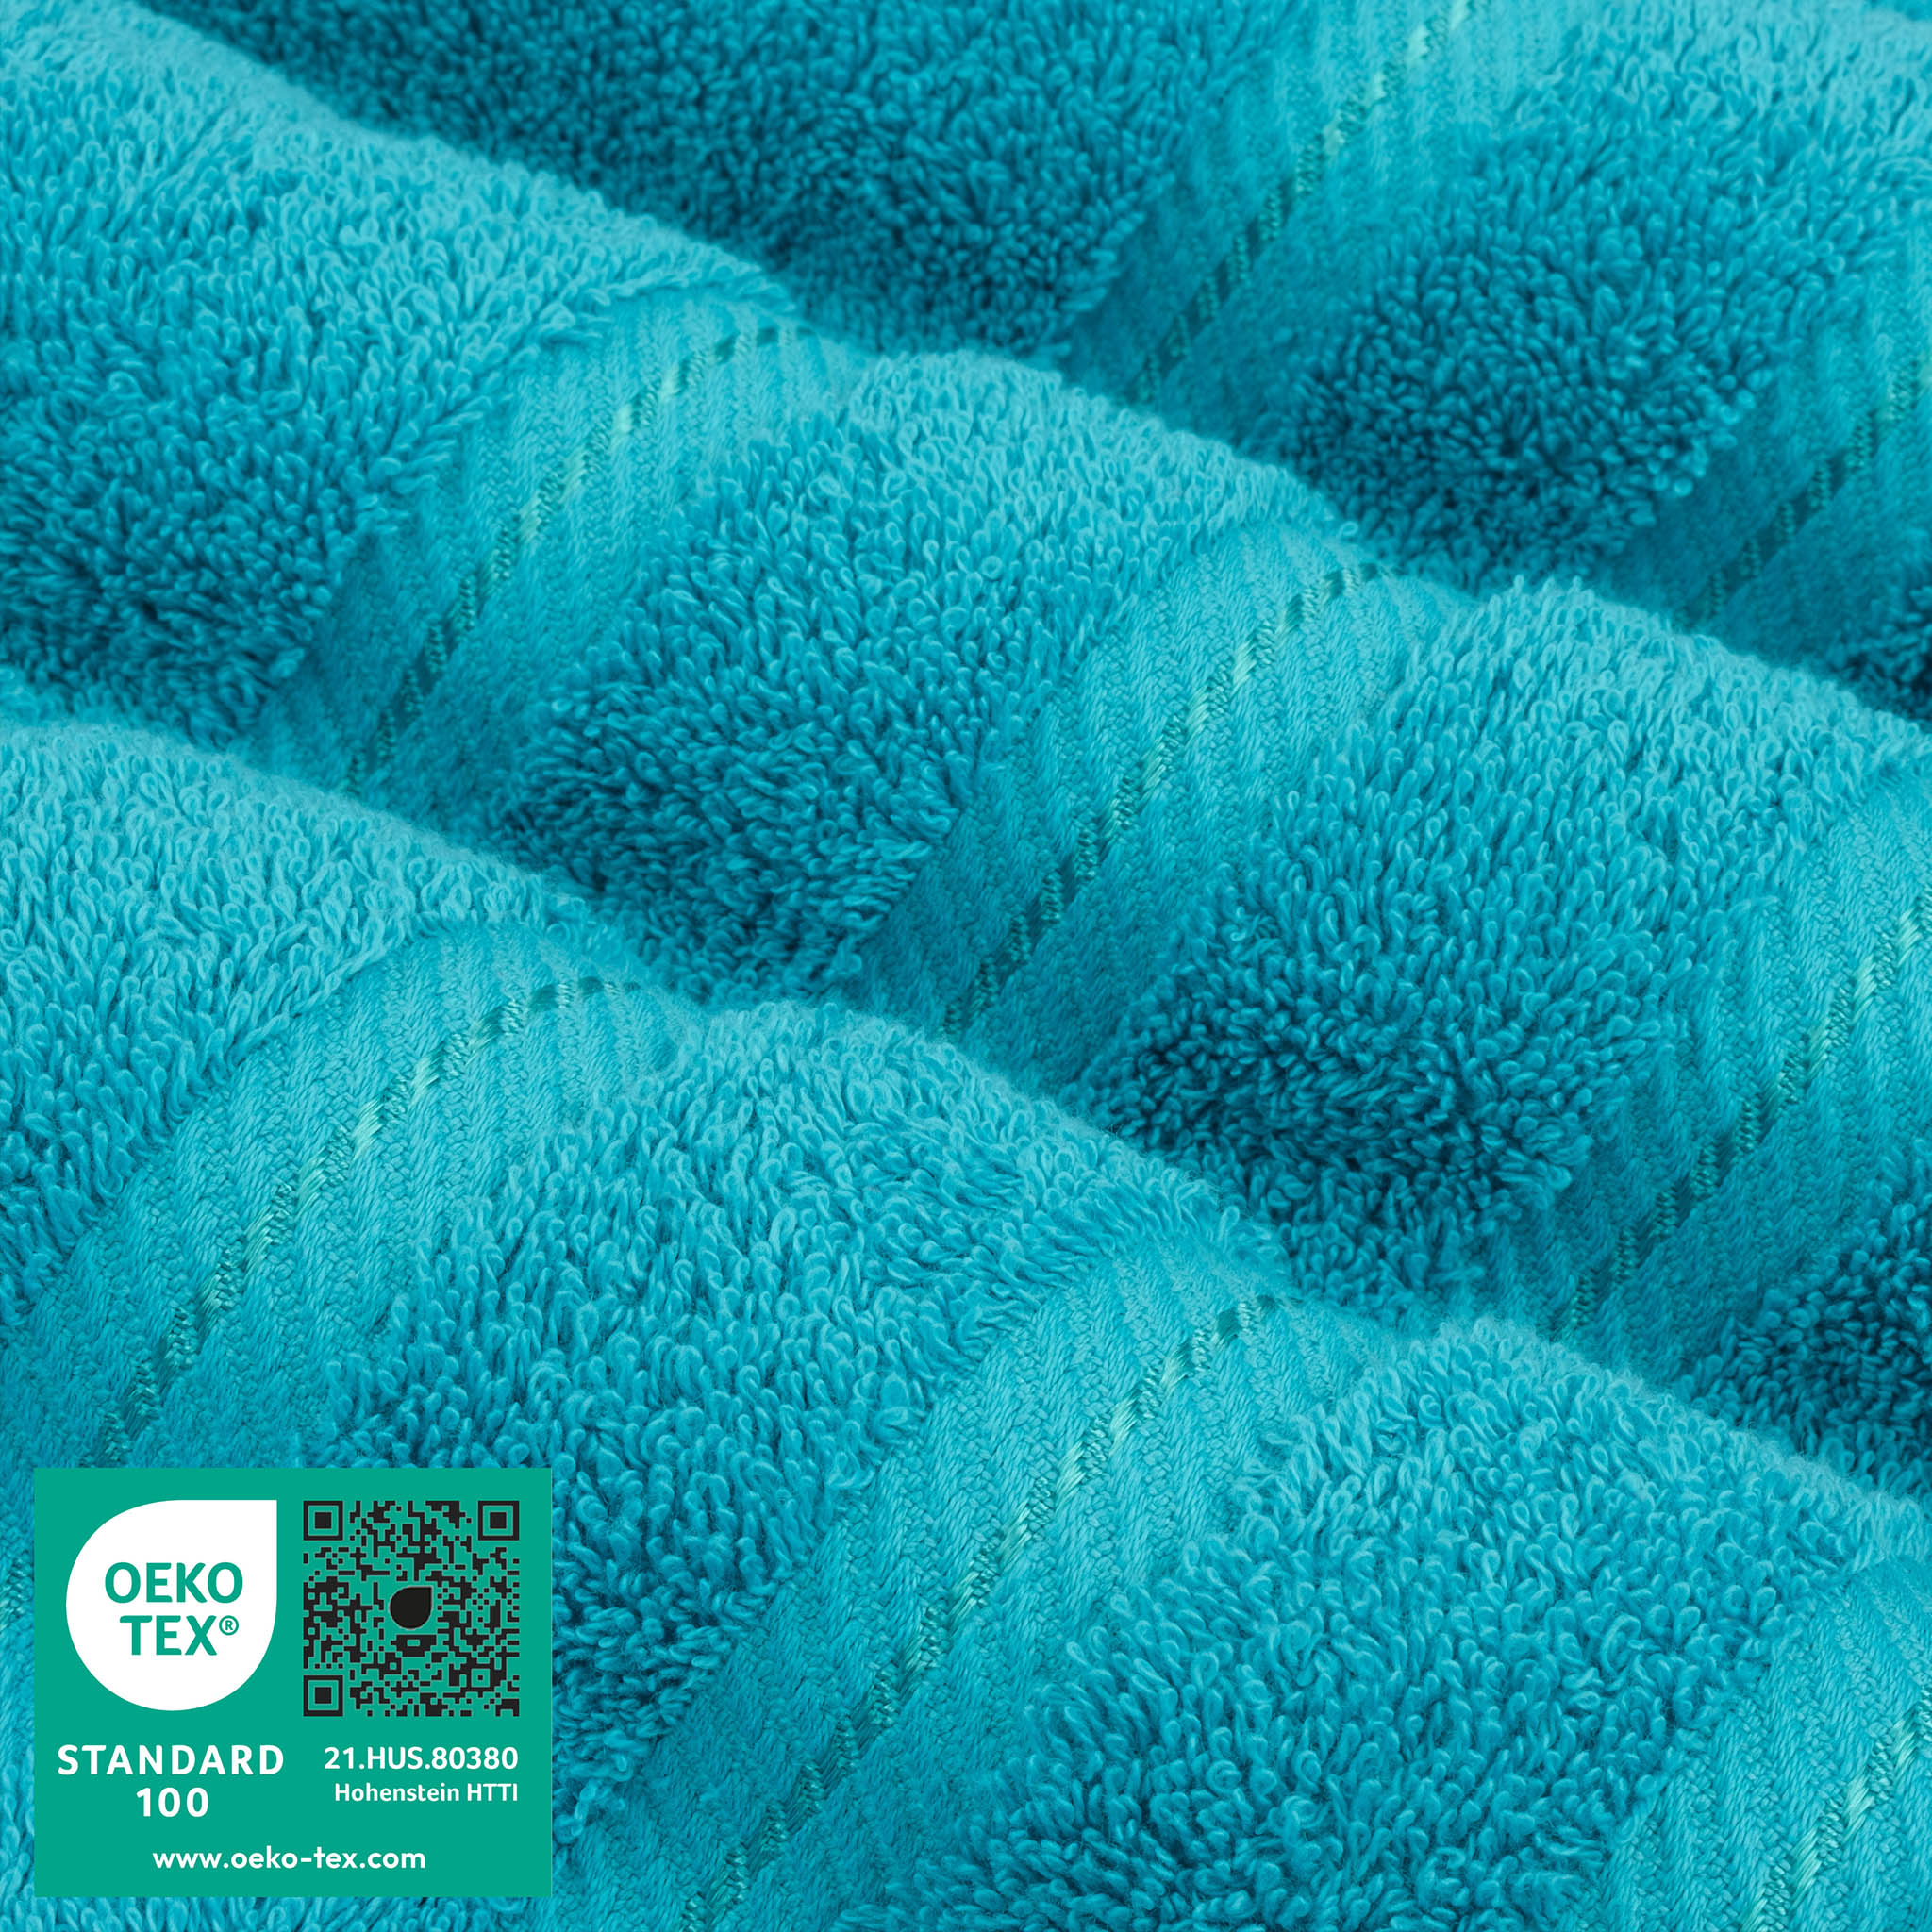 American Soft Linen 100% Turkish Cotton 6 Piece Towel Set Wholesale aqua-blue-3